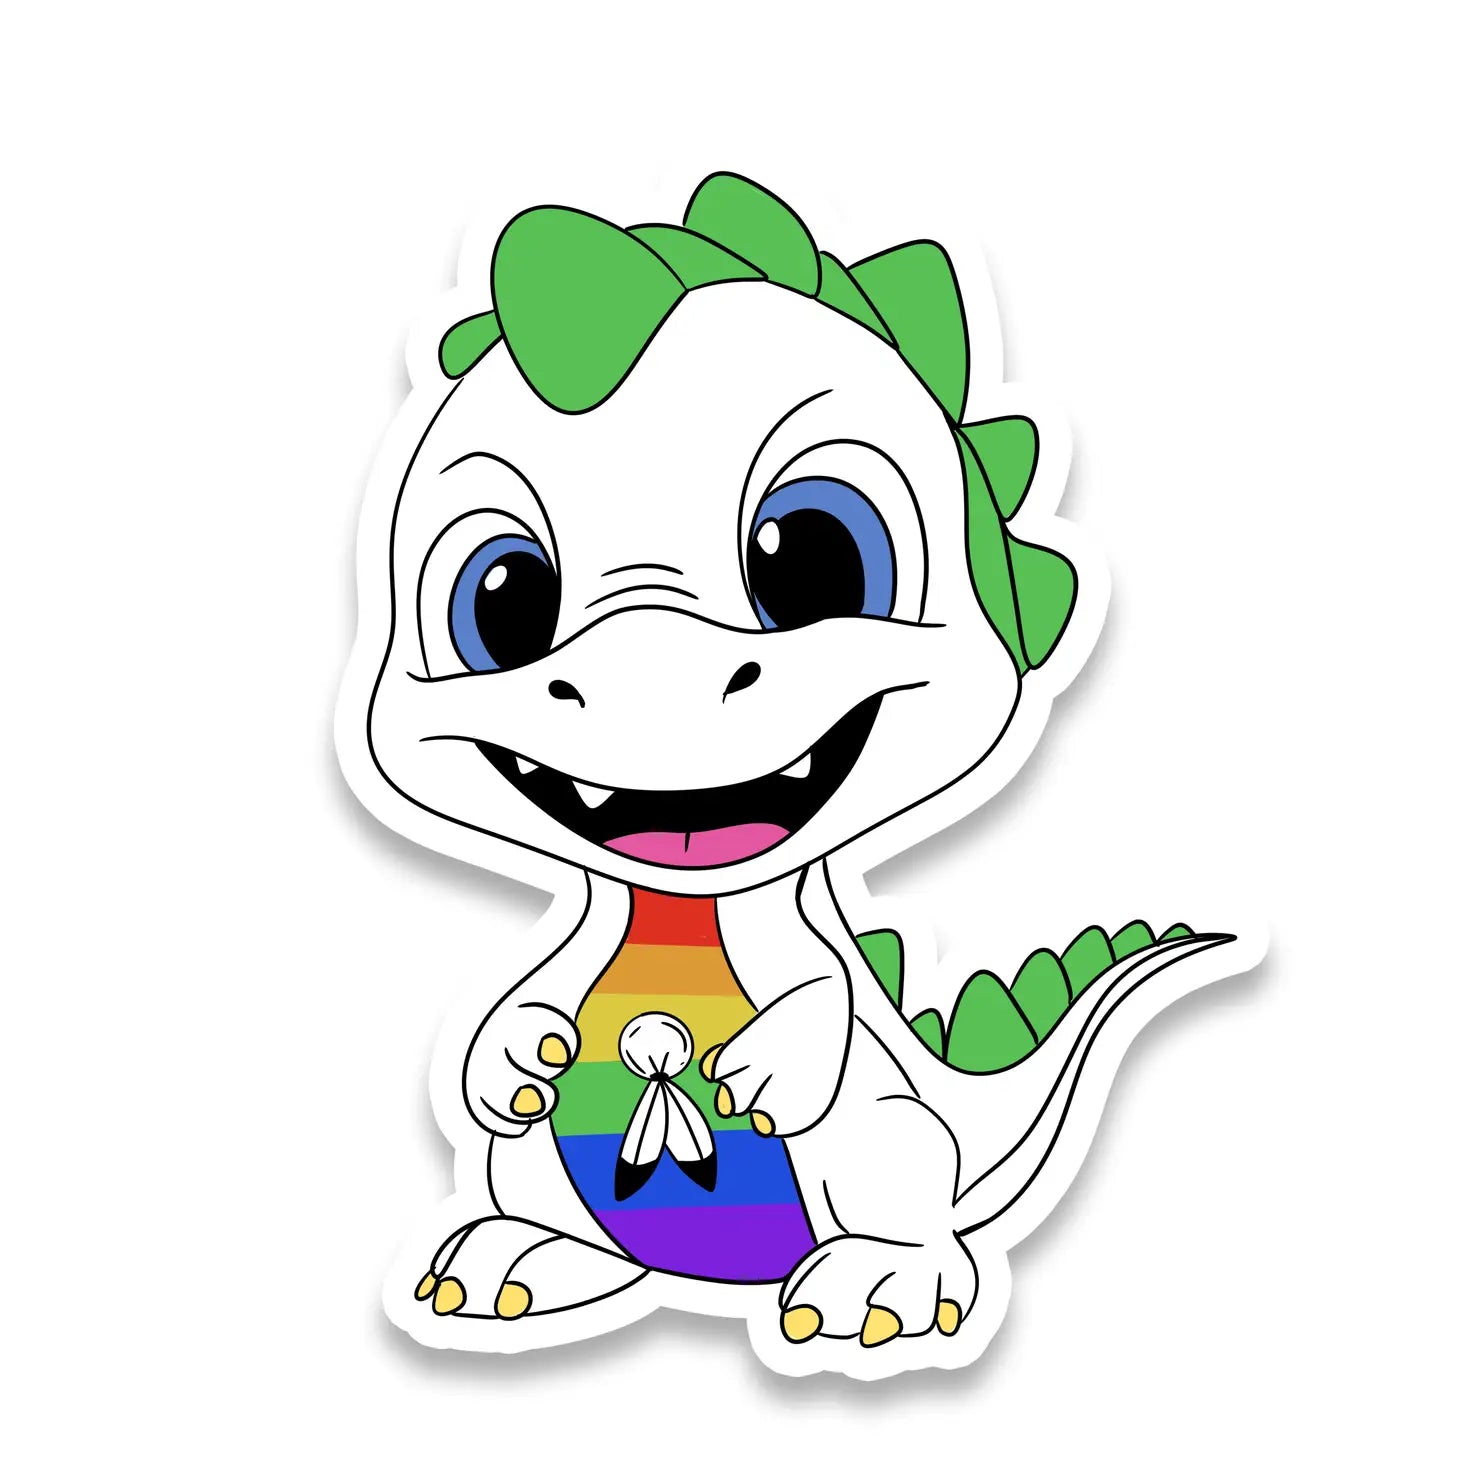 Dinosaur Two-Spirit Pride Sticker